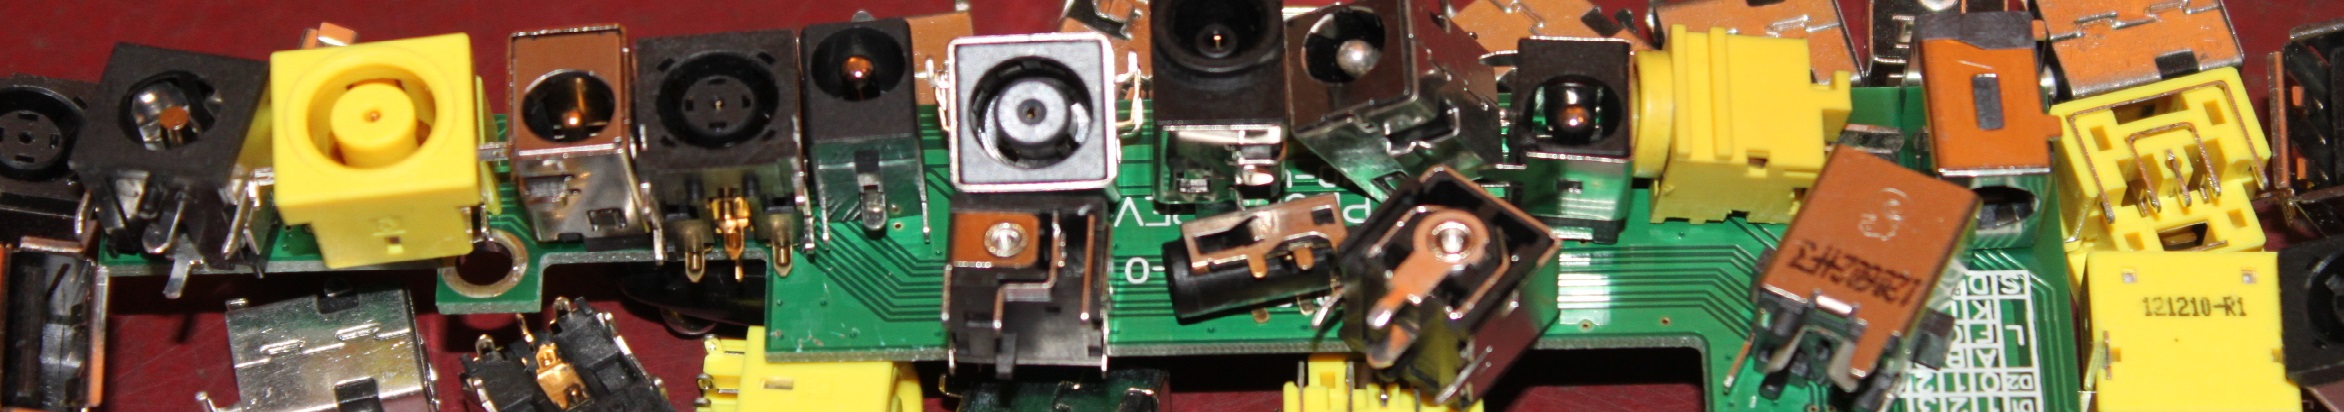 Power Jack Repair on Laptops